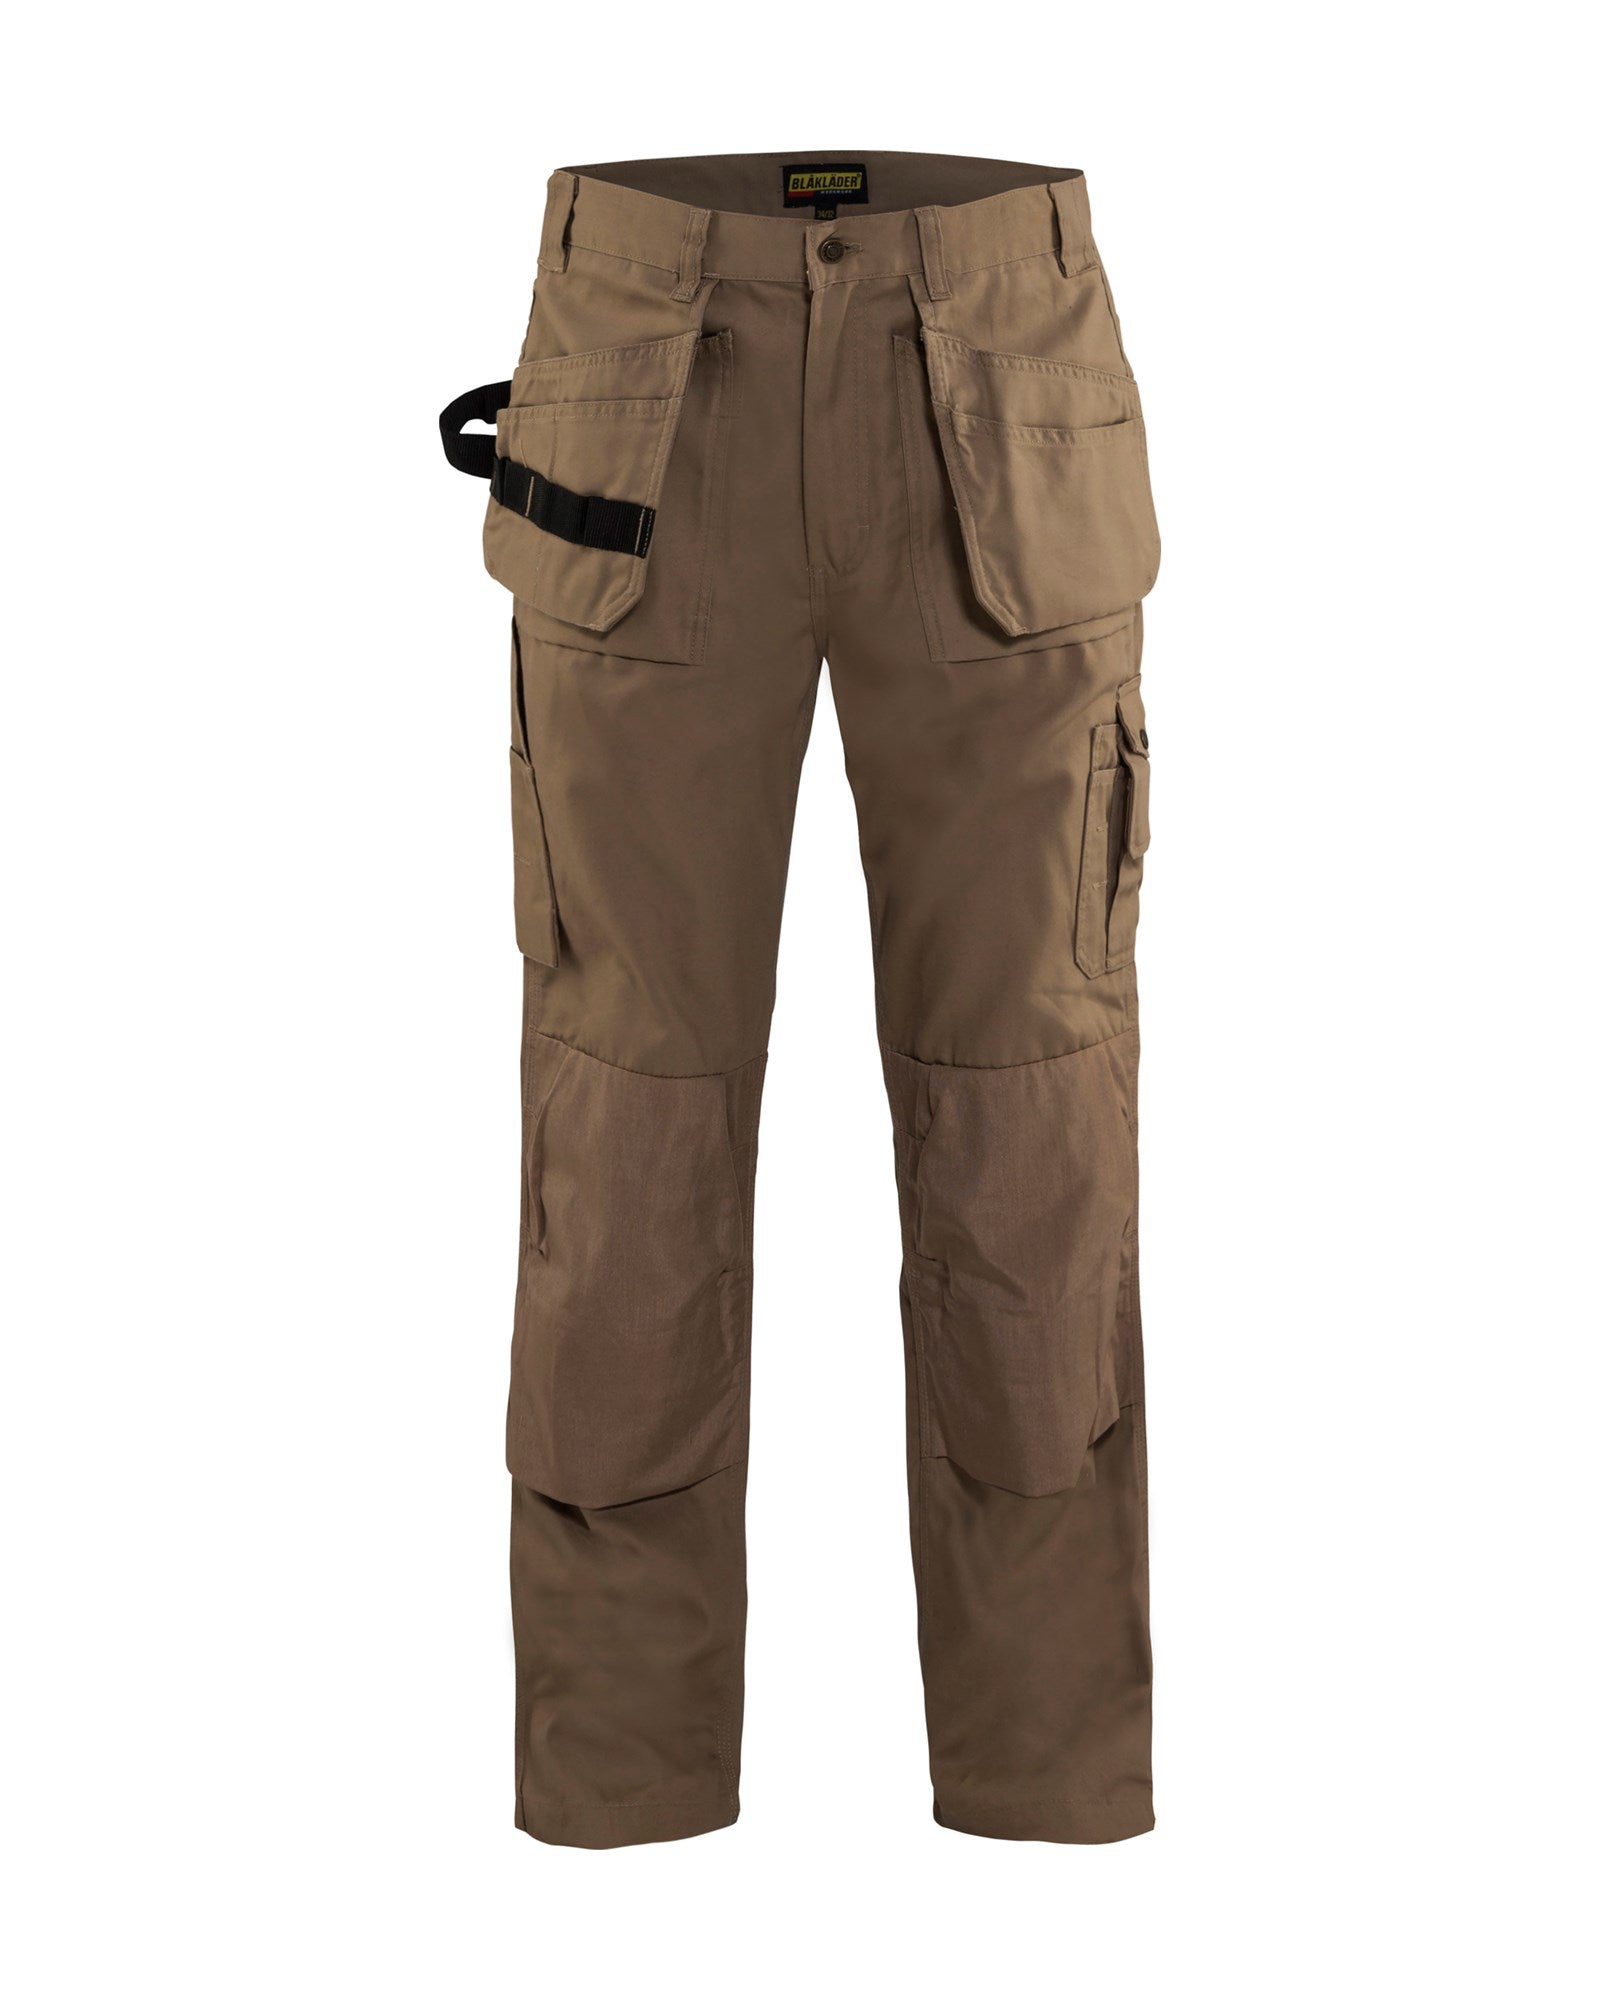 blaklader 1630 bantam work pants (Light Color) - MTN SHOP